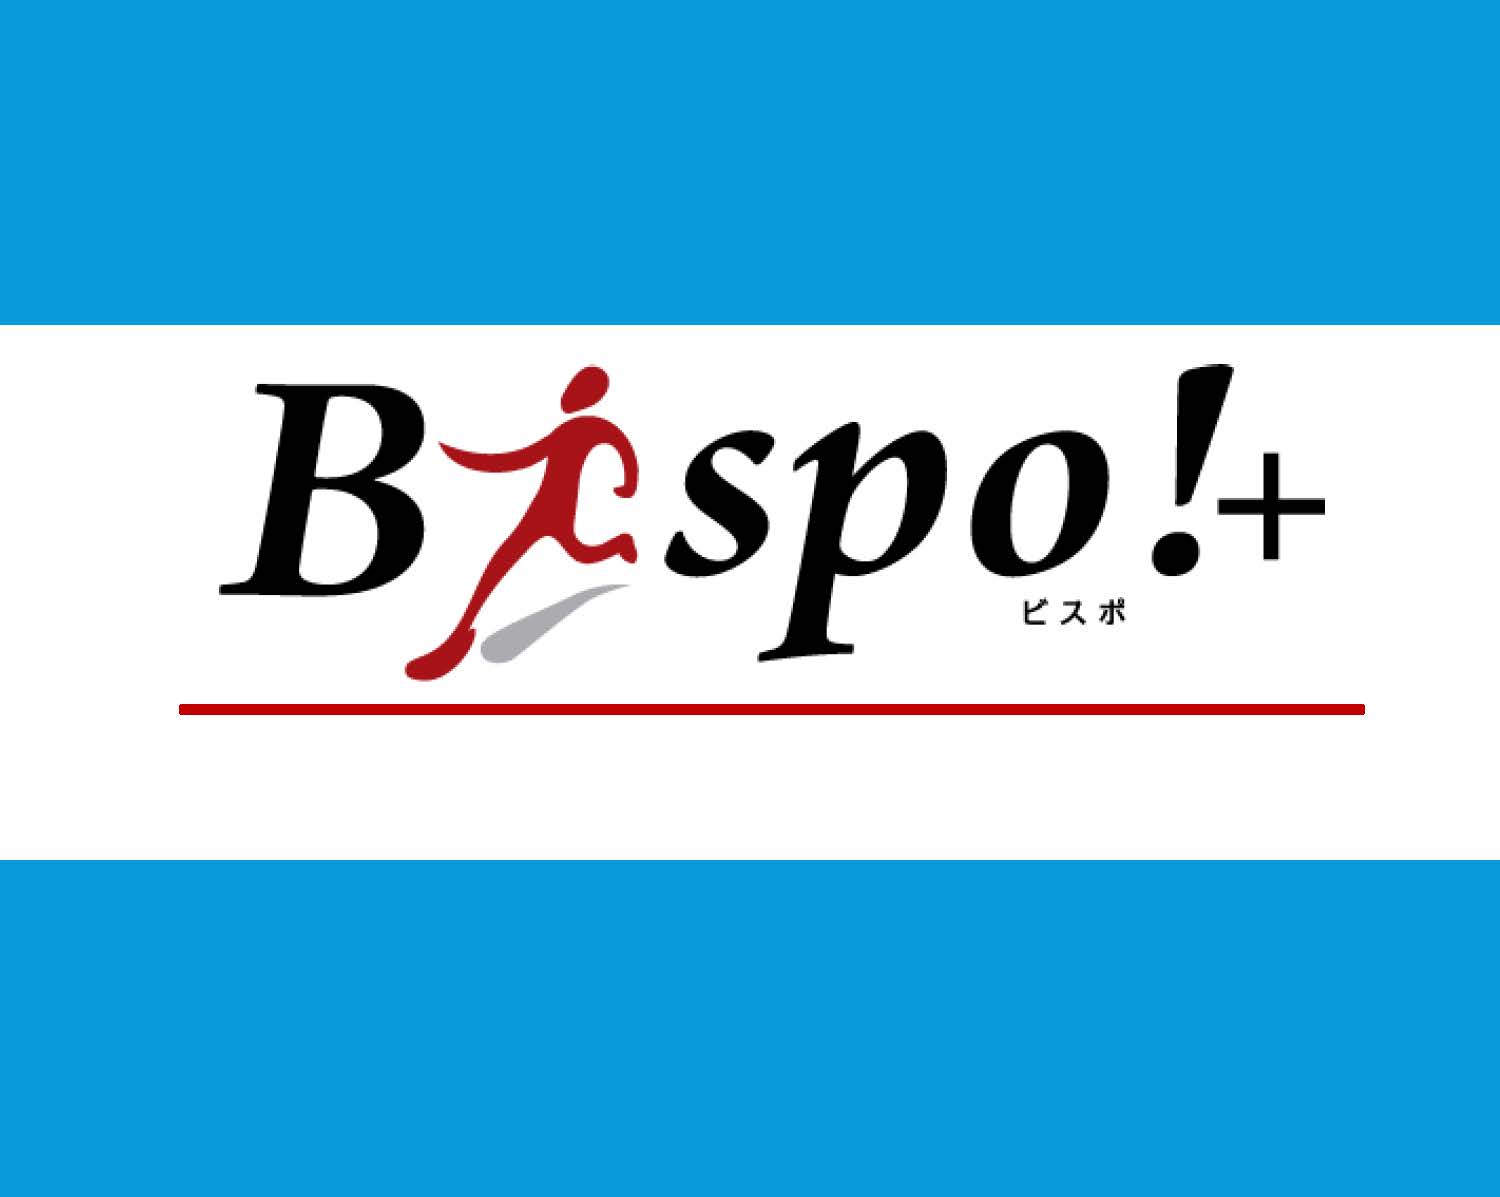 スポーツ情報誌「Bispo!+」Vol.29を発行しました！